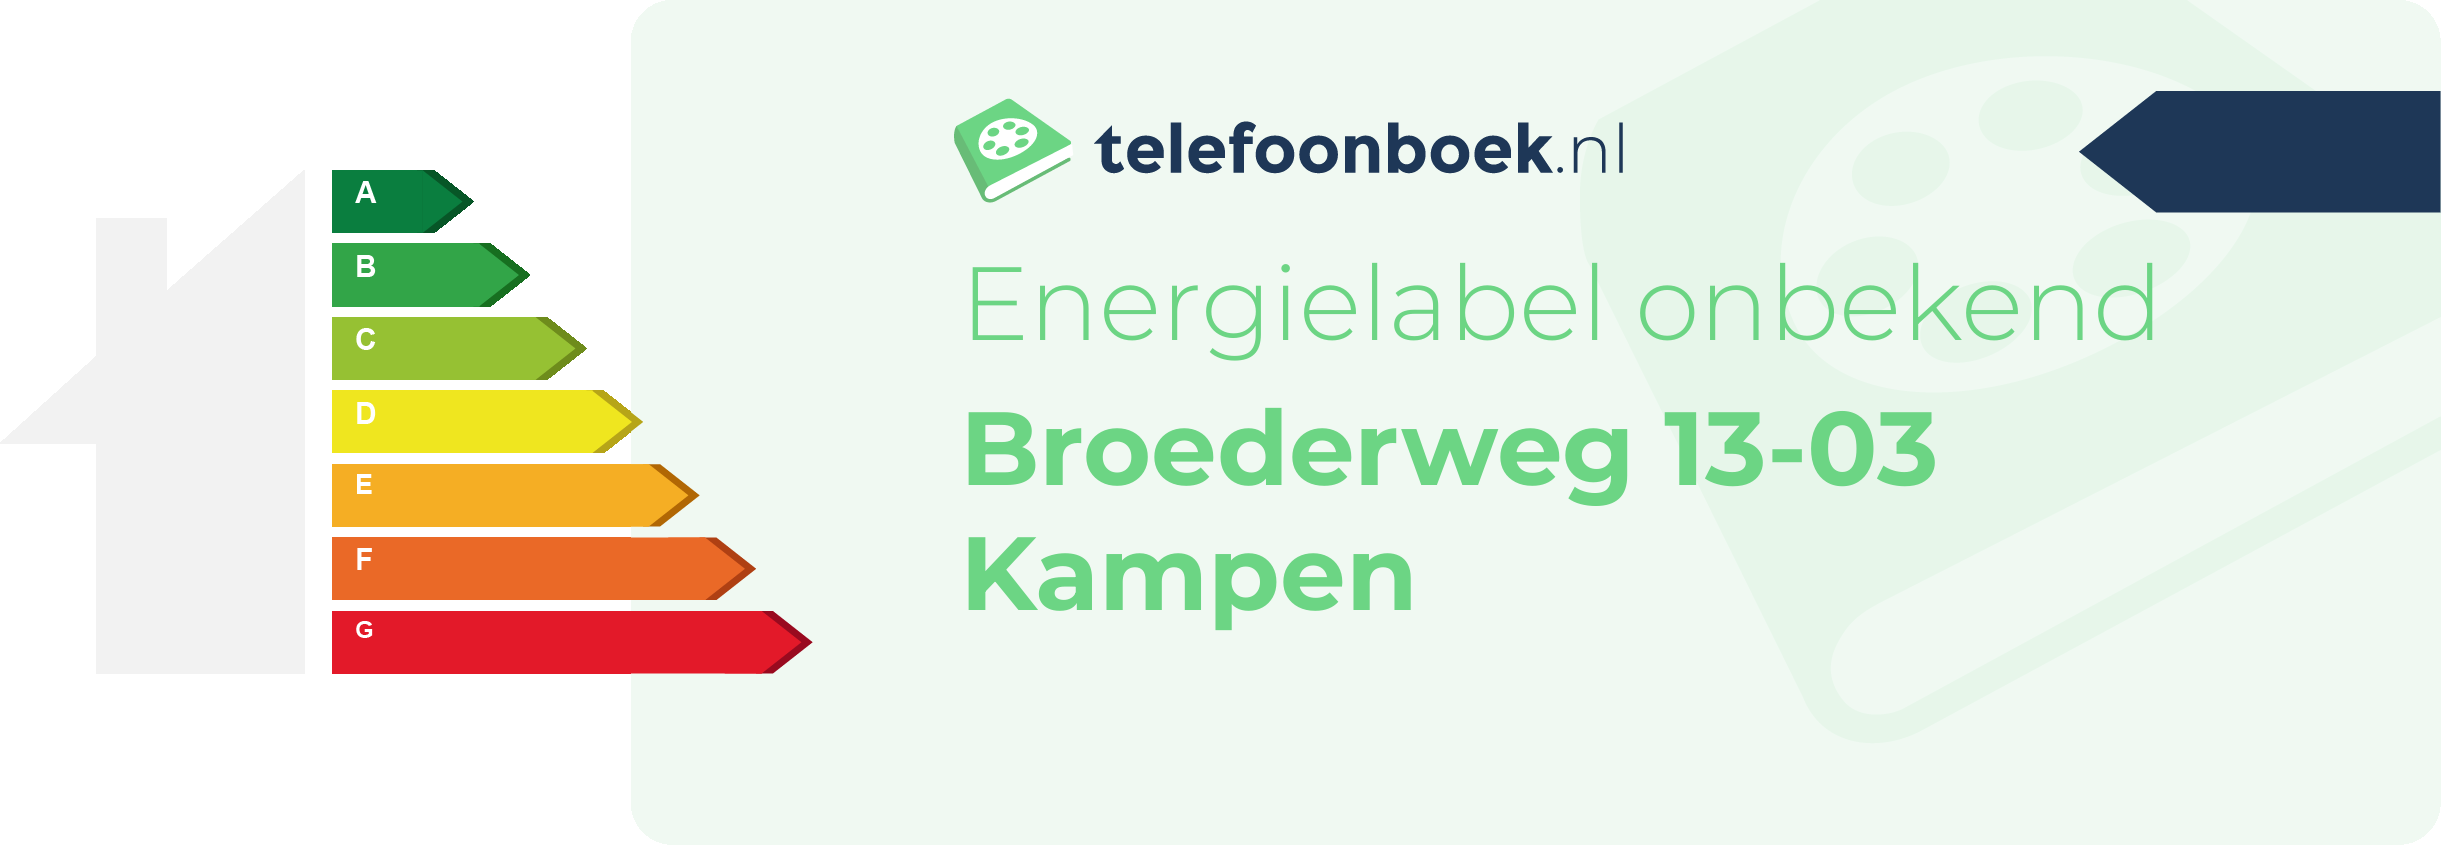 Energielabel Broederweg 13-03 Kampen